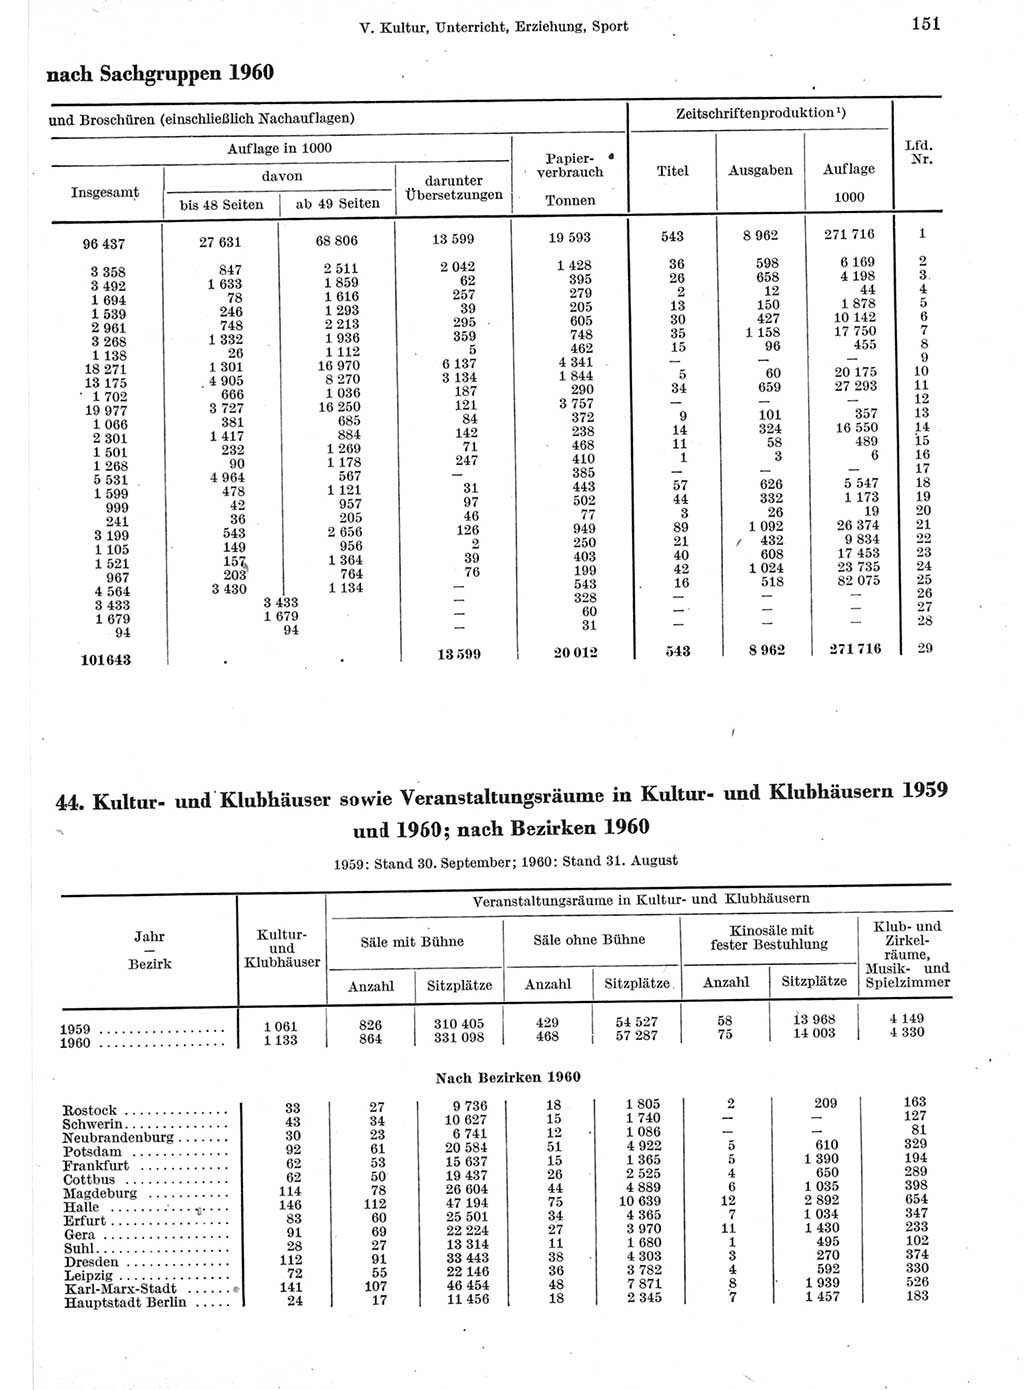 Statistisches Jahrbuch der Deutschen Demokratischen Republik (DDR) 1960-1961, Seite 151 (Stat. Jb. DDR 1960-1961, S. 151)